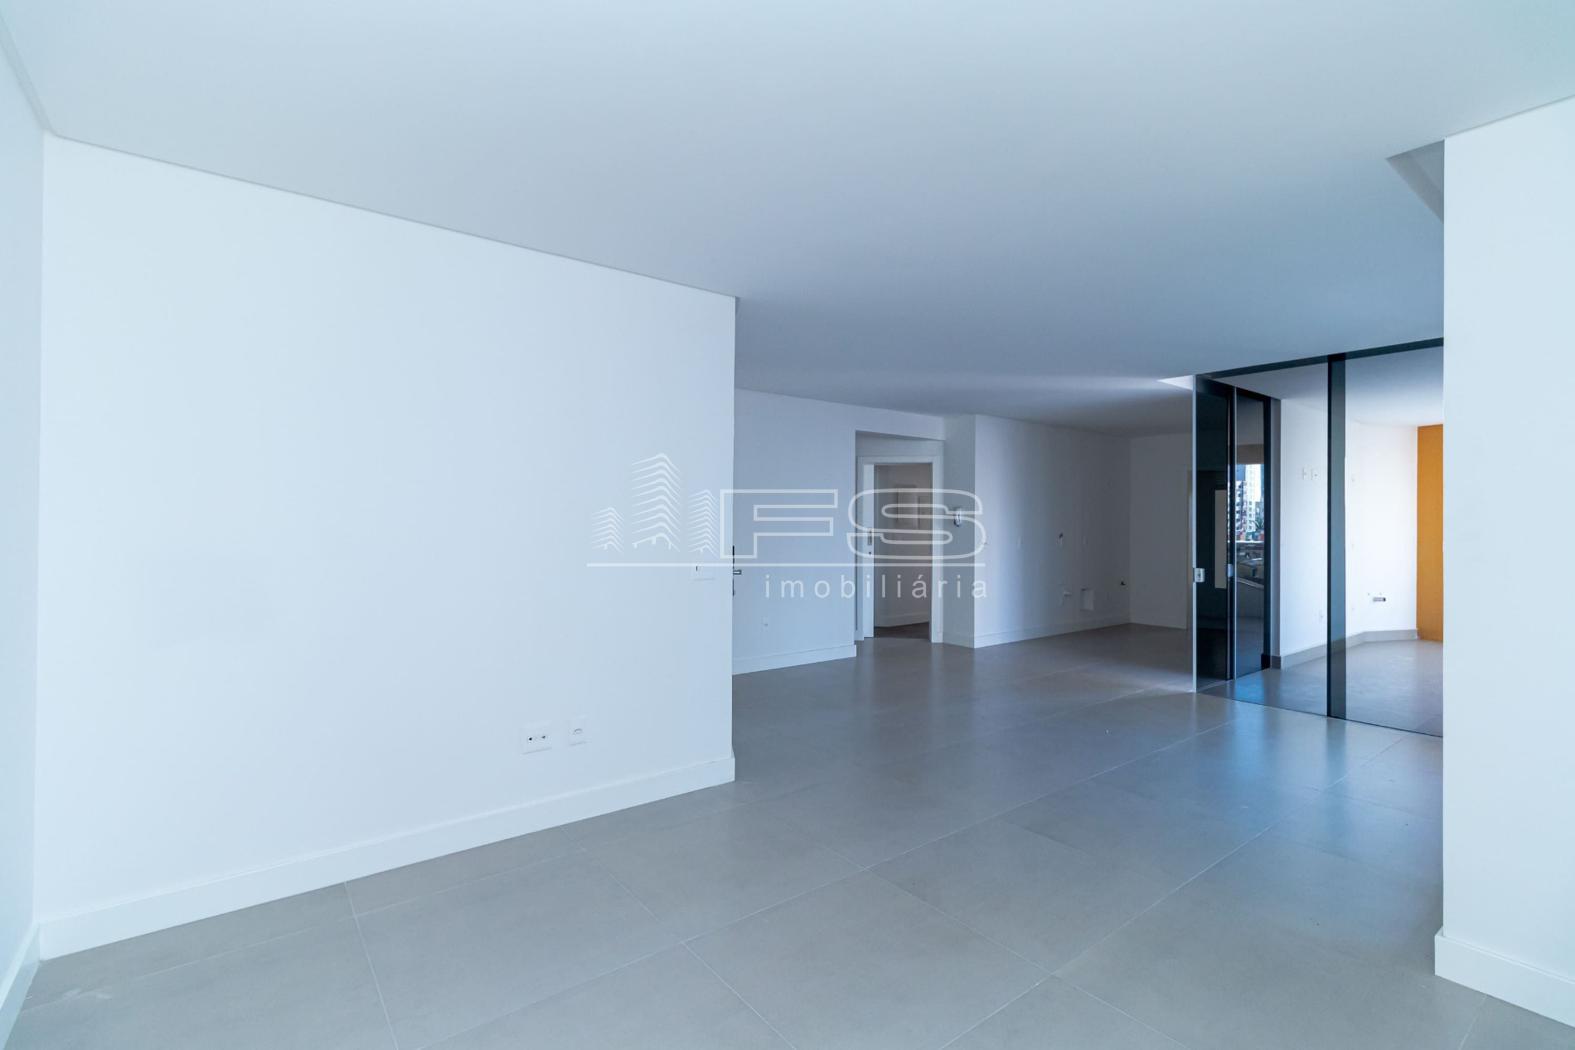 Apartamento com 3 Dormitórios à venda, 140 m² por R$ 1.460.000,00